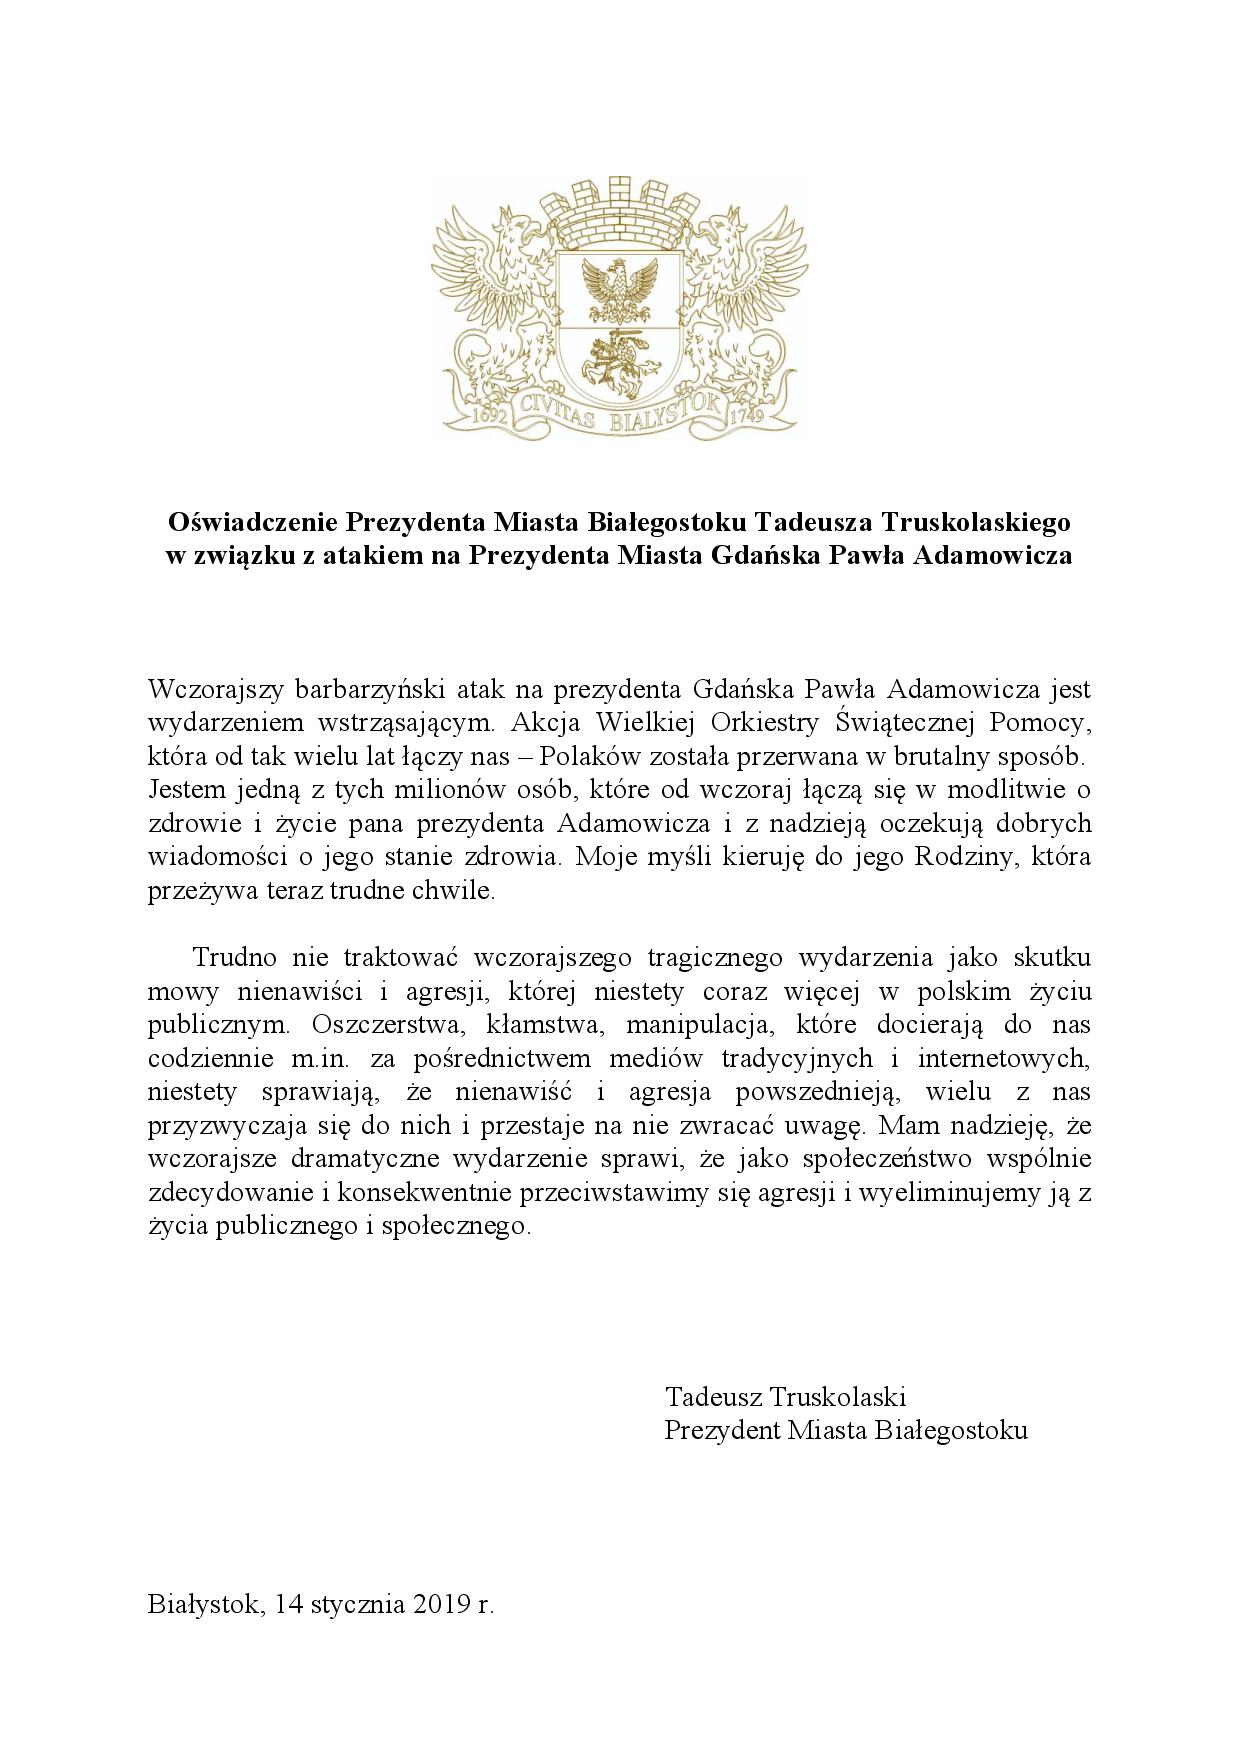 Oświadczenie prezydenta Białegostoku Tadeusza Truskolaskiego